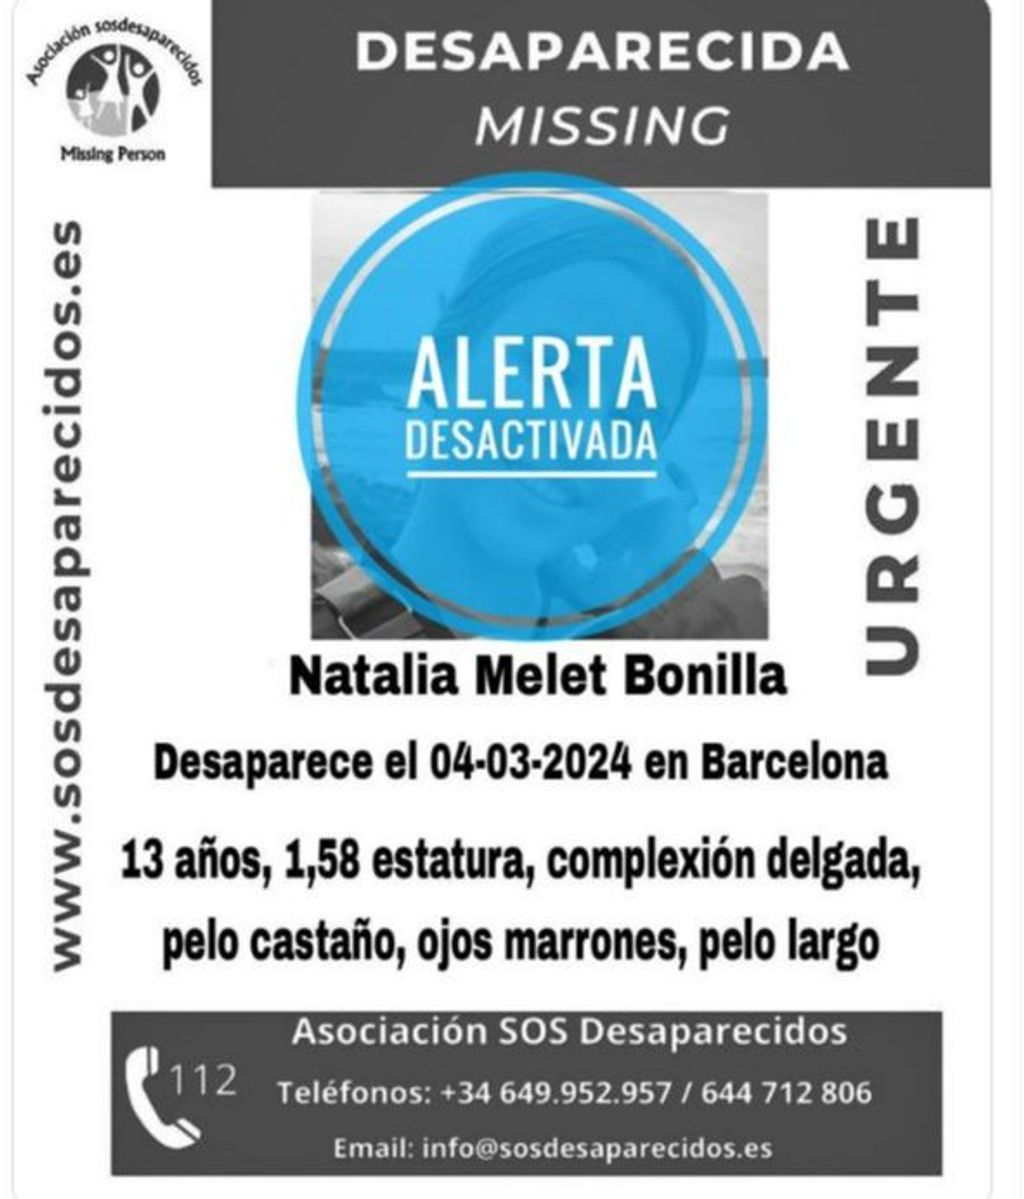 SOS Desaparecidos ha desactivado la alerta de búsqueda de Natalia Melet Bonilla